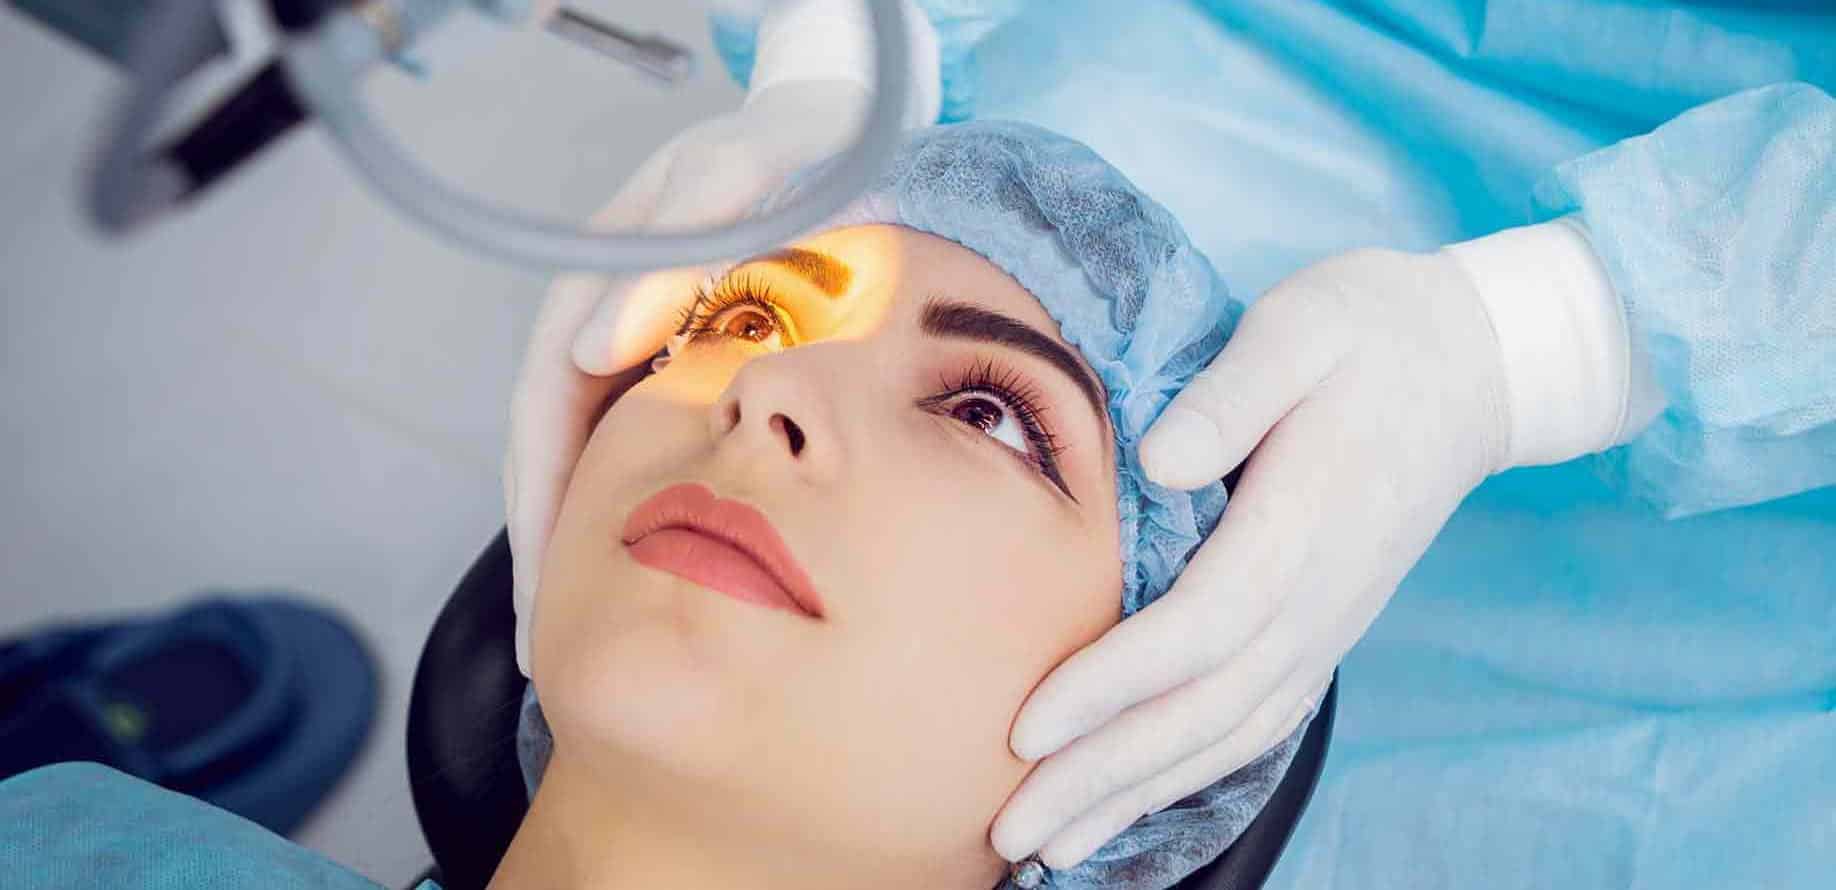 Operation On Eye Cataract Surgery E1547032979785 مجلة نقطة العلمية